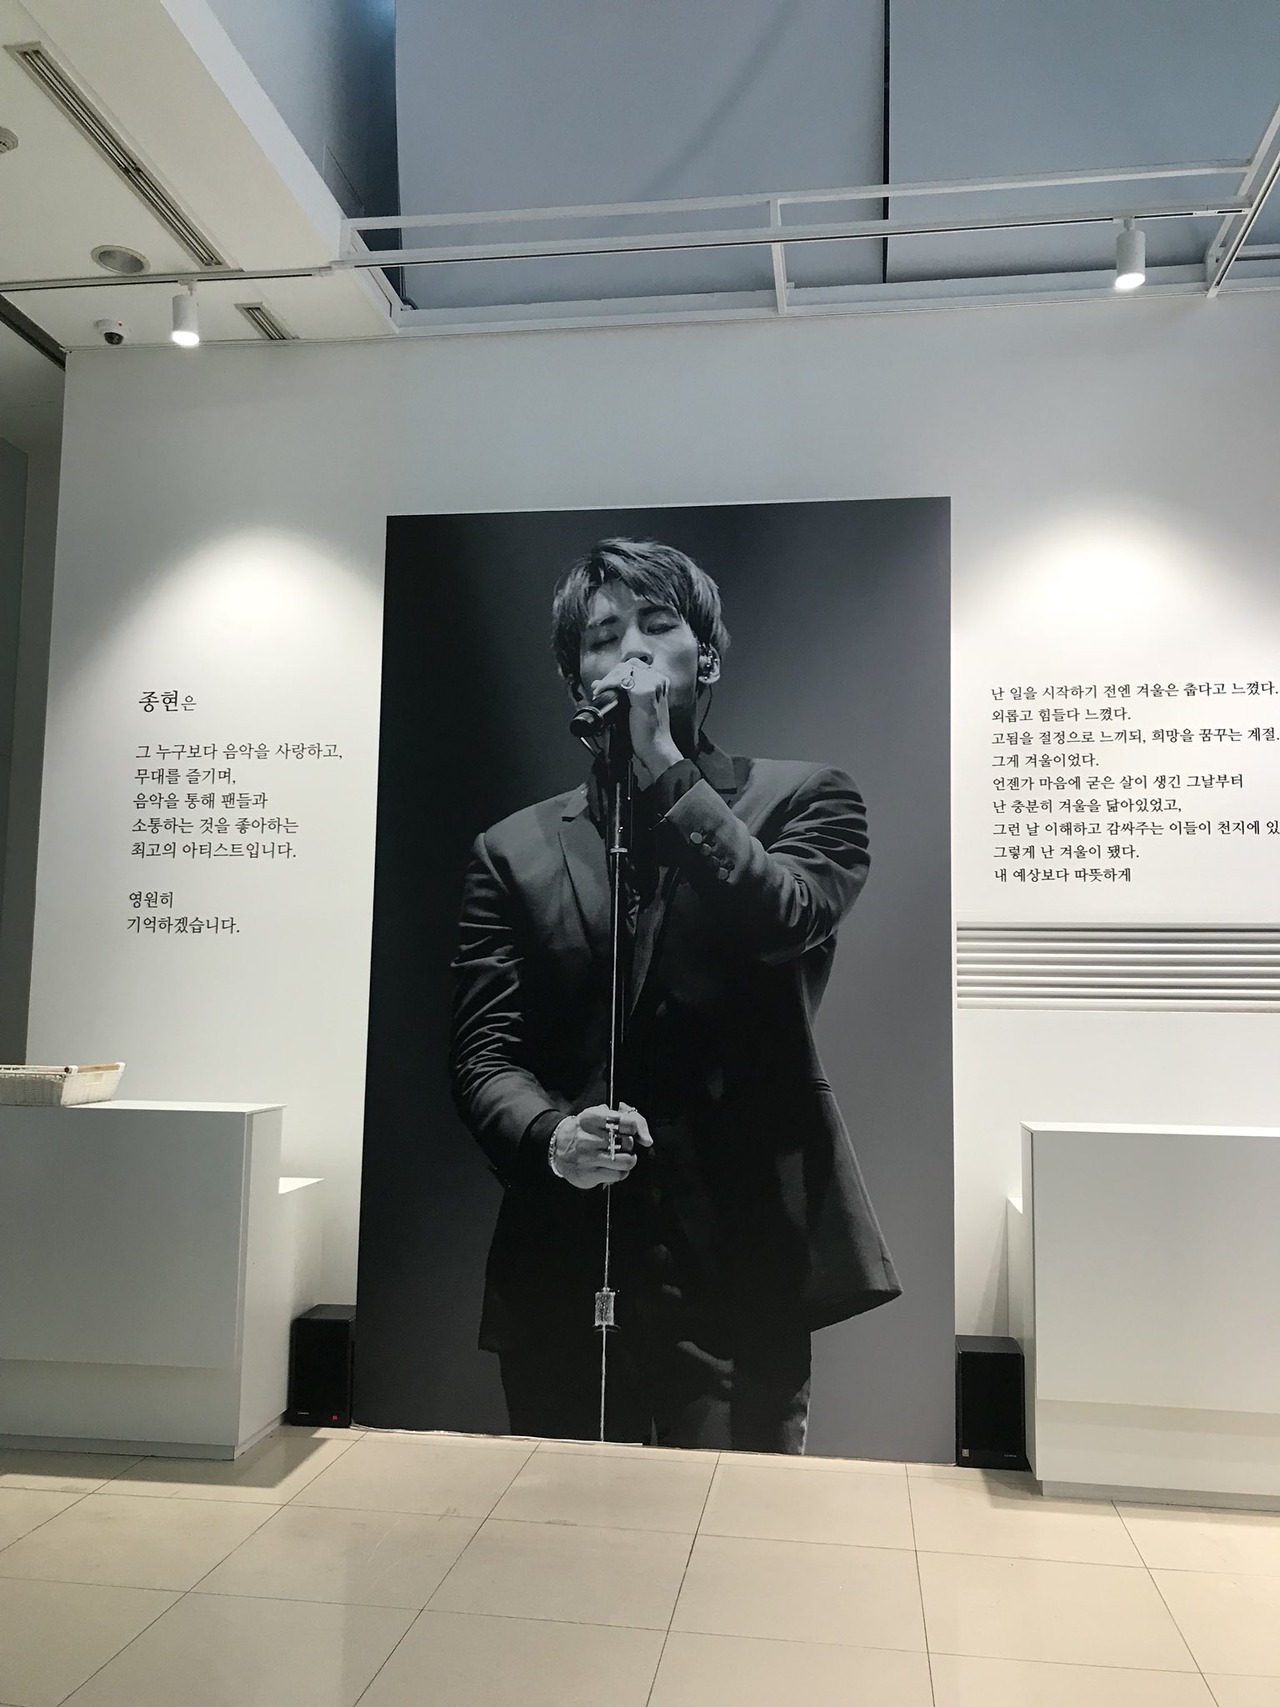 Агентство SM Entertainment открыло мемориал для поклонников Джонхёна из SHINee